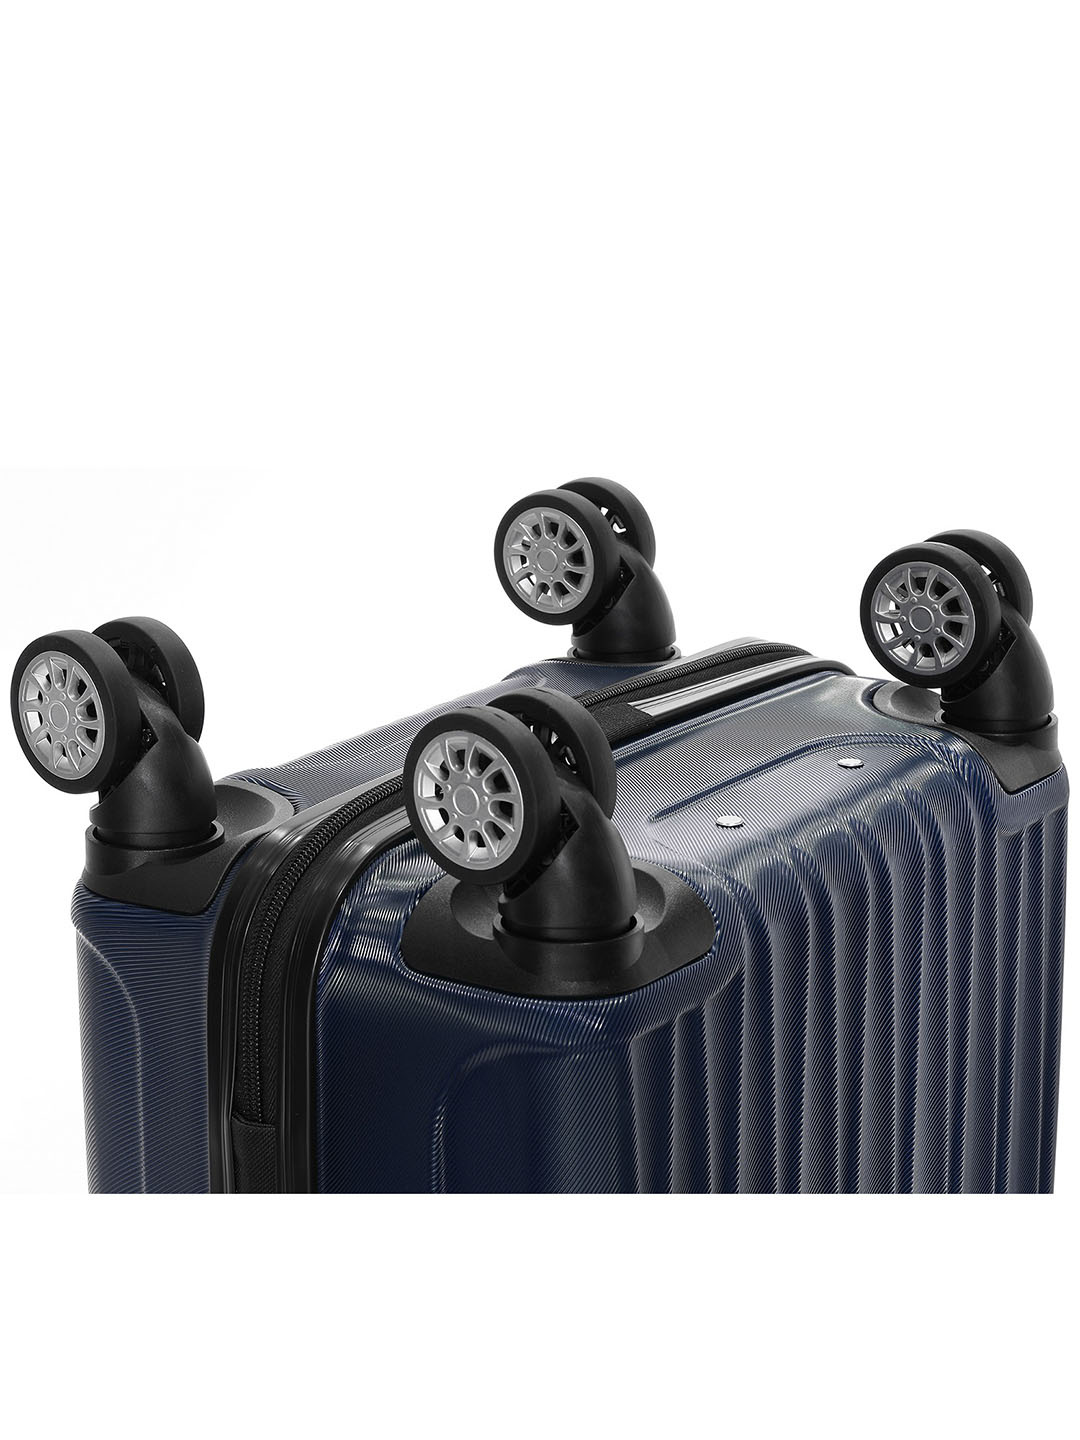 Фото Маленький чемодан на колесах из рифленого ABS пластика синего цвета Чемоданы